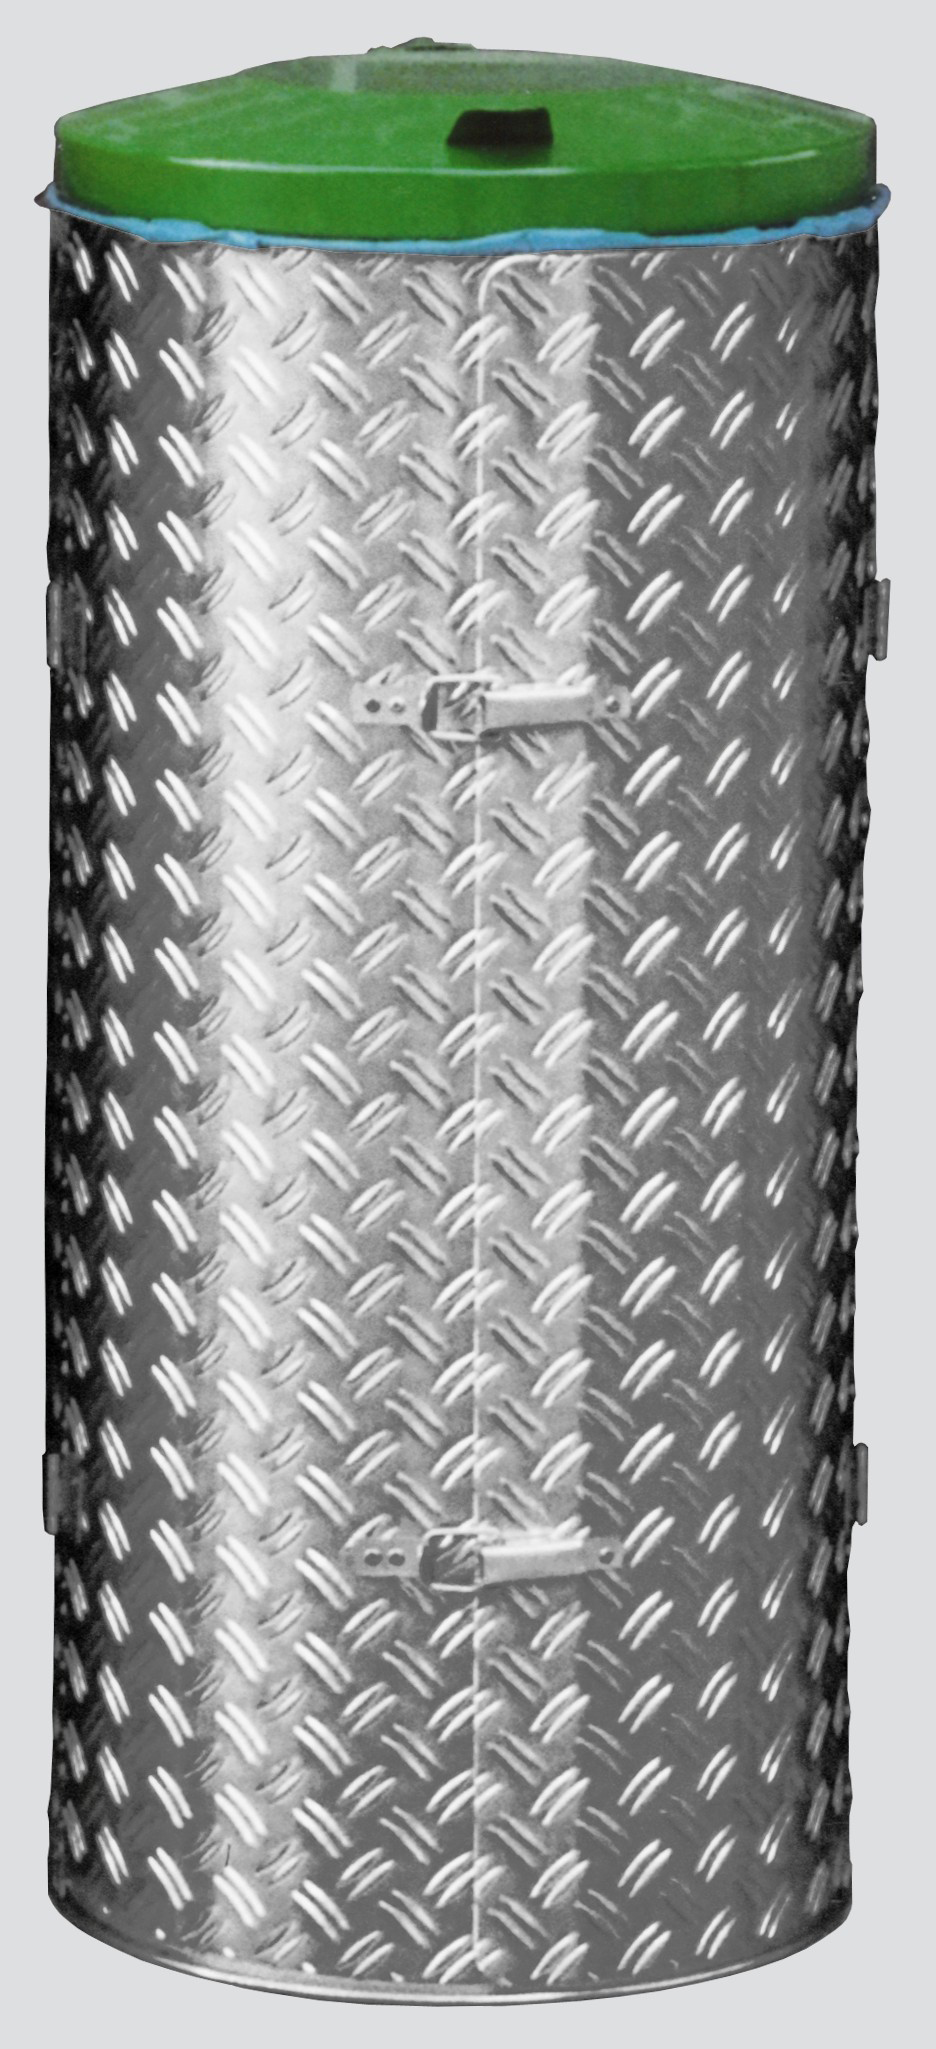 Kompakter Abfallsammler mit Türe | 120 Liter, HxBxT 99x43,5x43,5cm | Edelstahl | Alu-Duett-Blech | Deckel grün